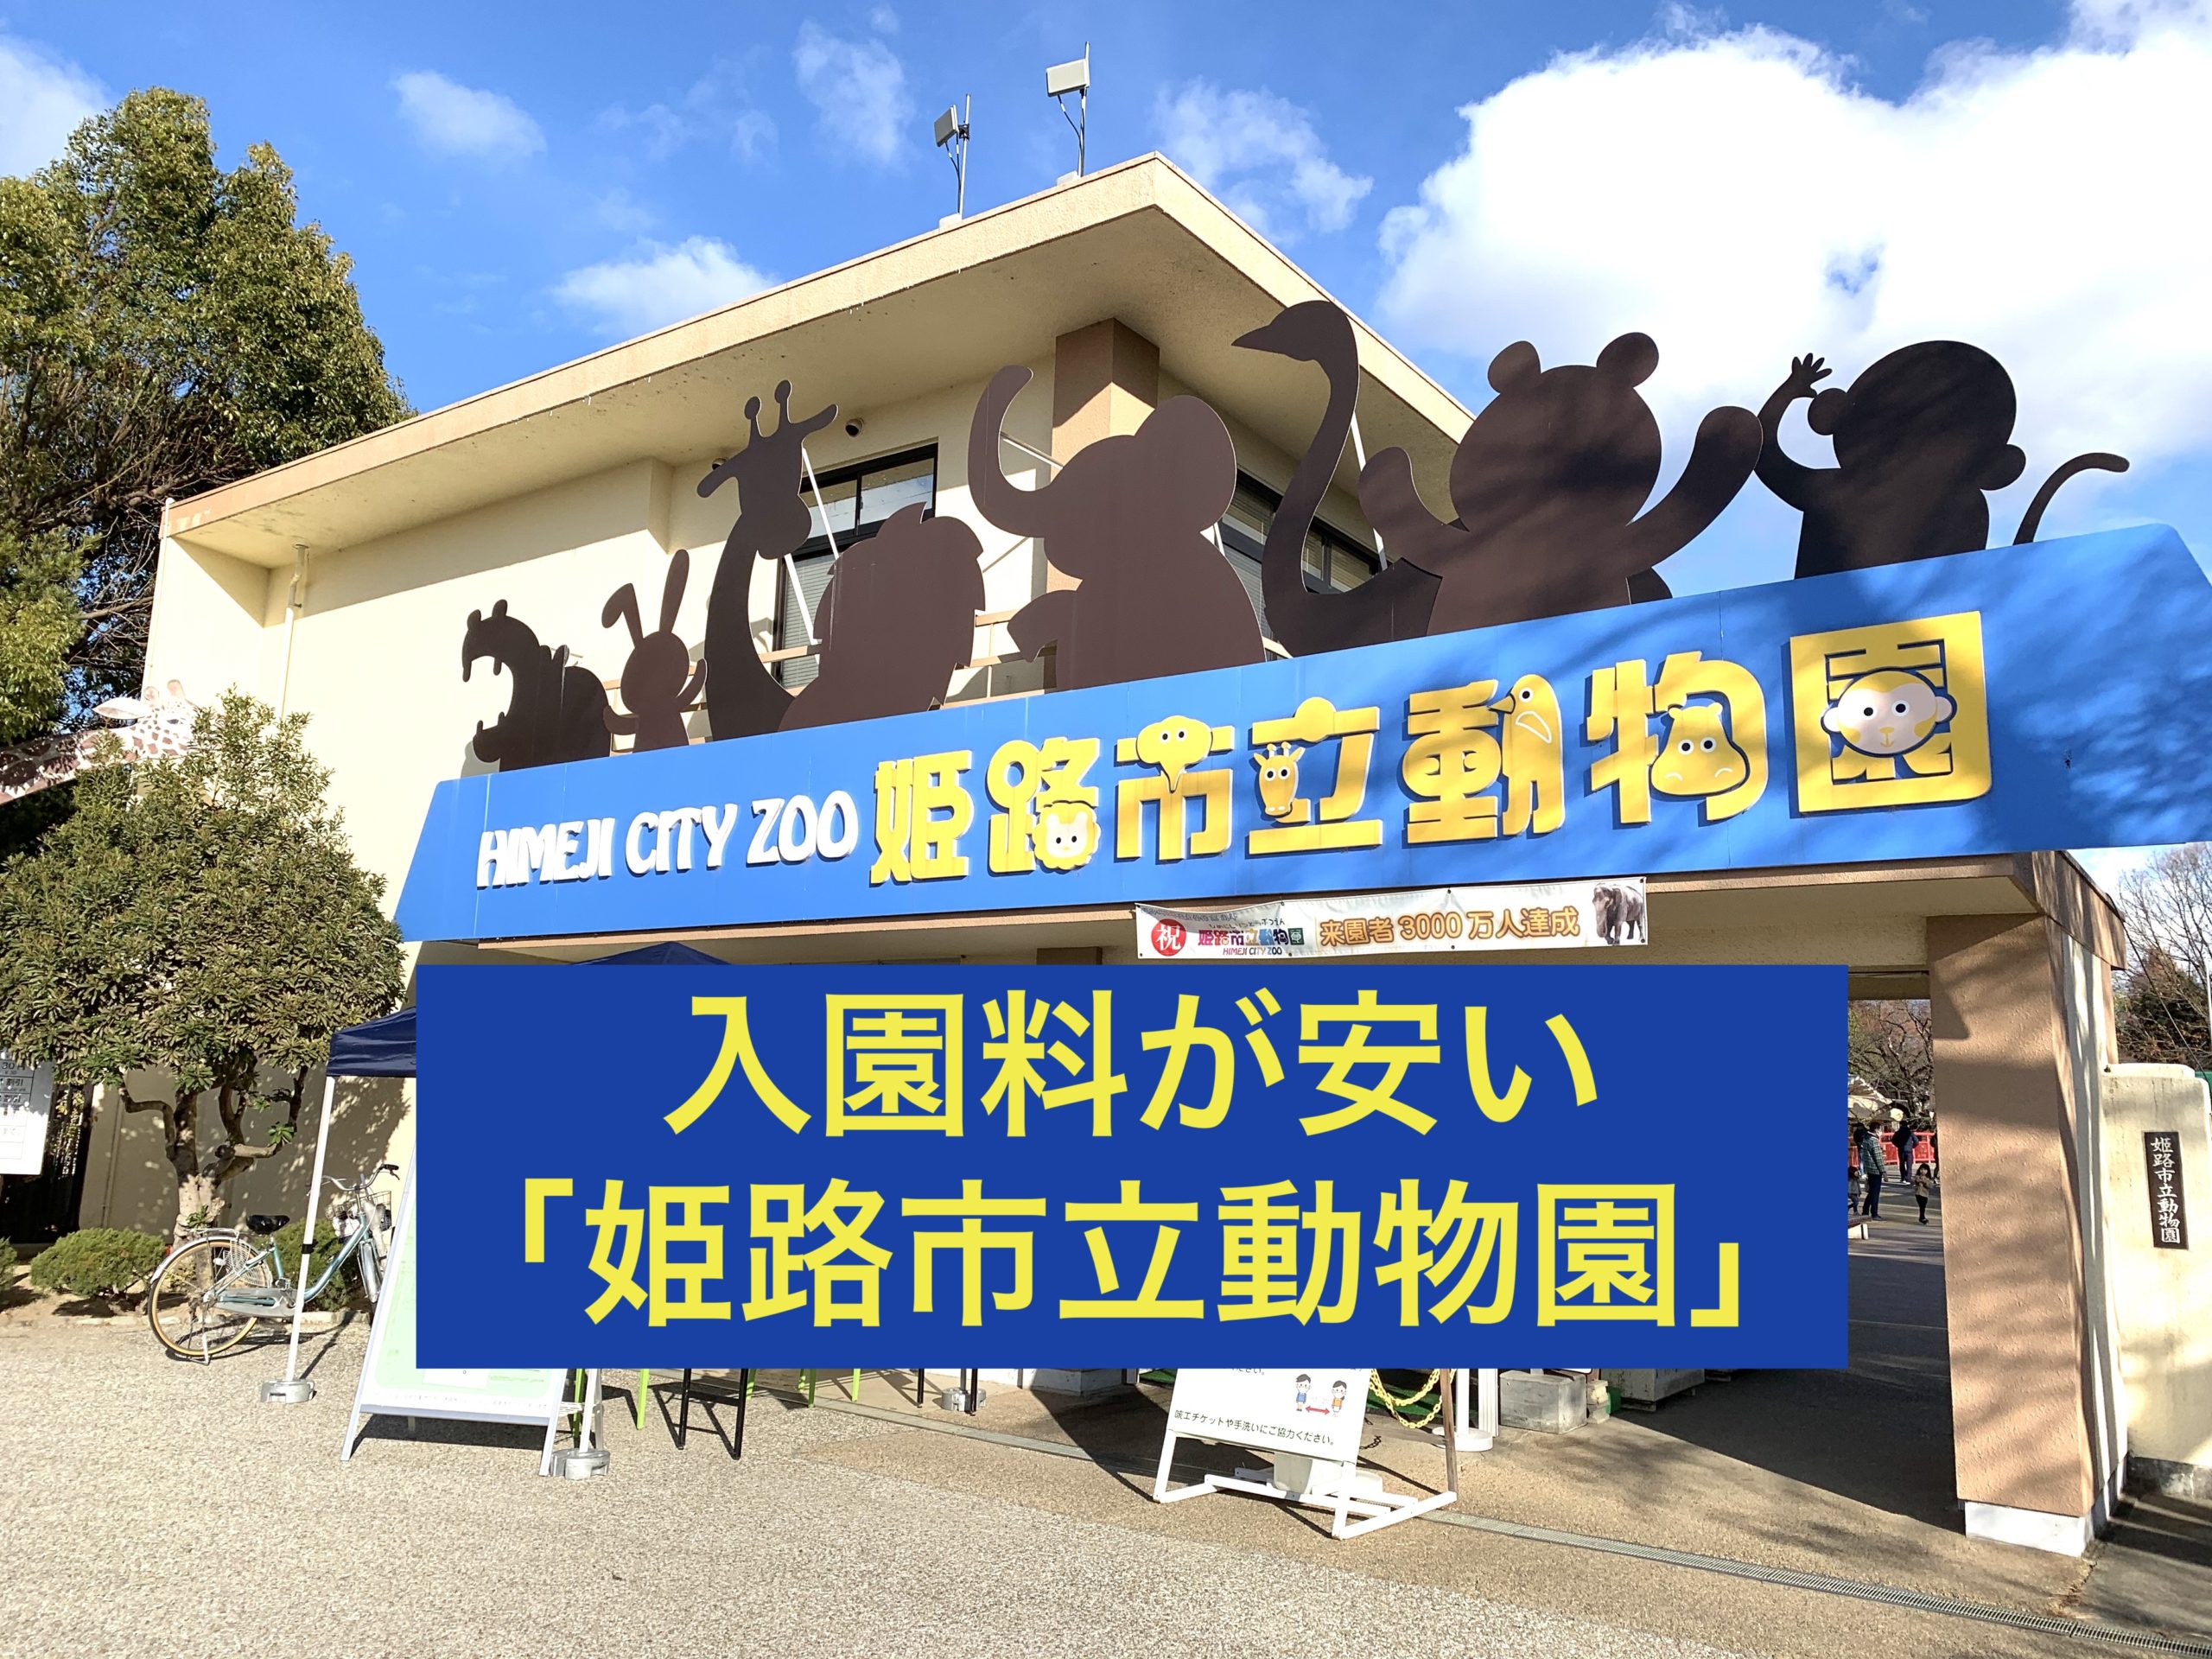 姫路市立動物園 姫路城を眺めることが出来る 入園料が安くお得 旅ブログ